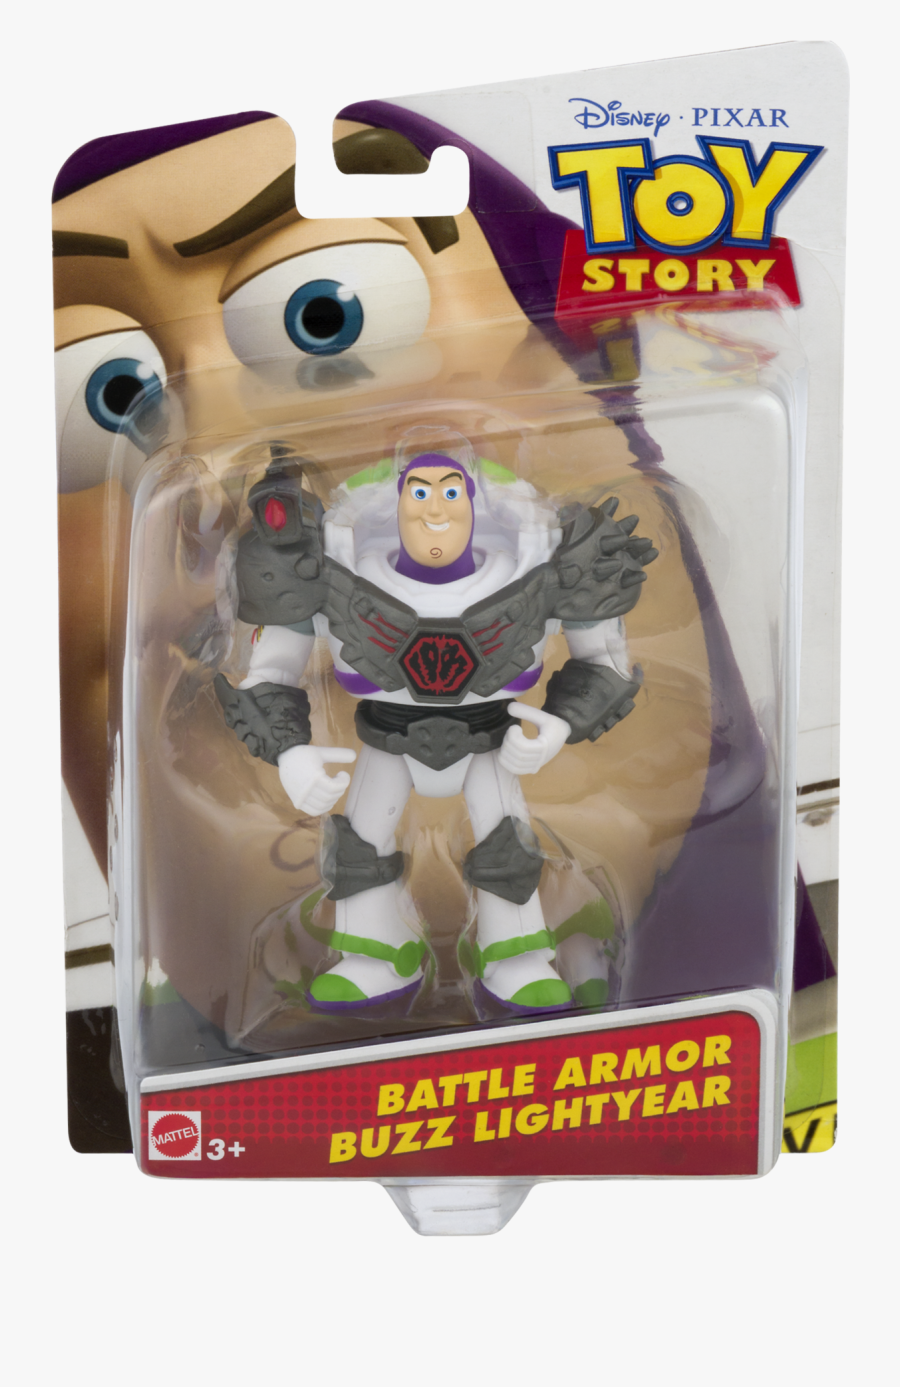 Disney/pixar Toy Story Battlesaurs Buzz Lightyear Figure - Toy Story 4 Toy Story Toons Small Fry, Transparent Clipart